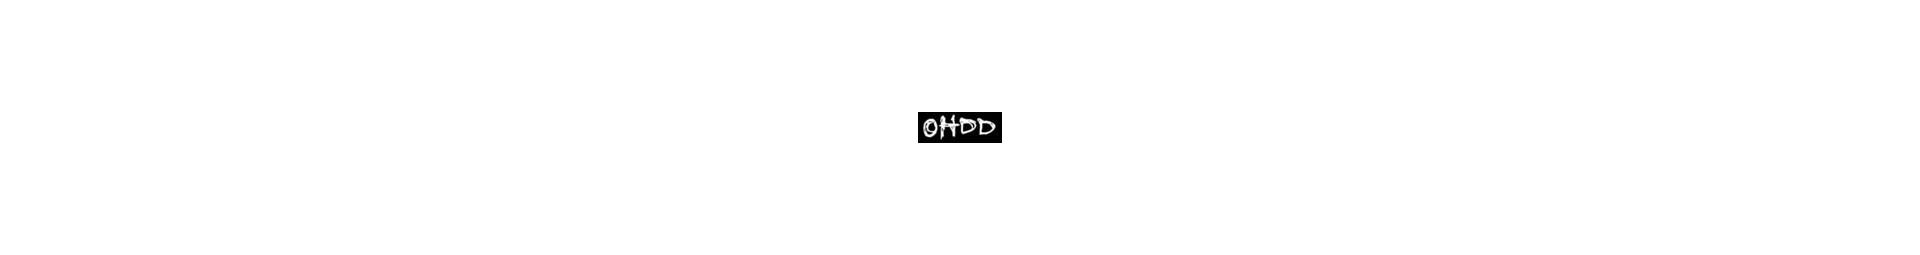 OHDD (STQ)